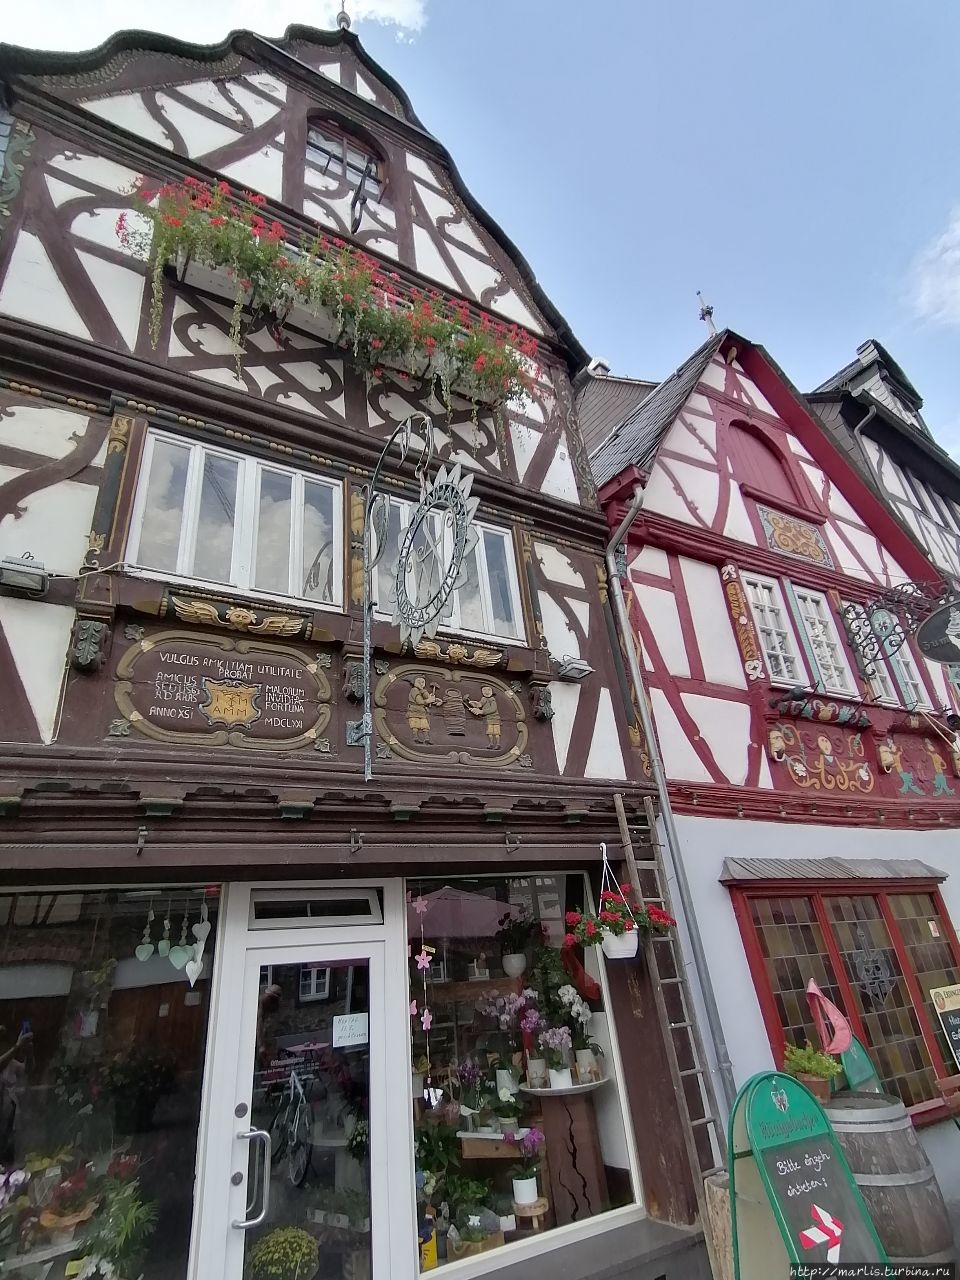 Деревянное барокко Ренс, Германия